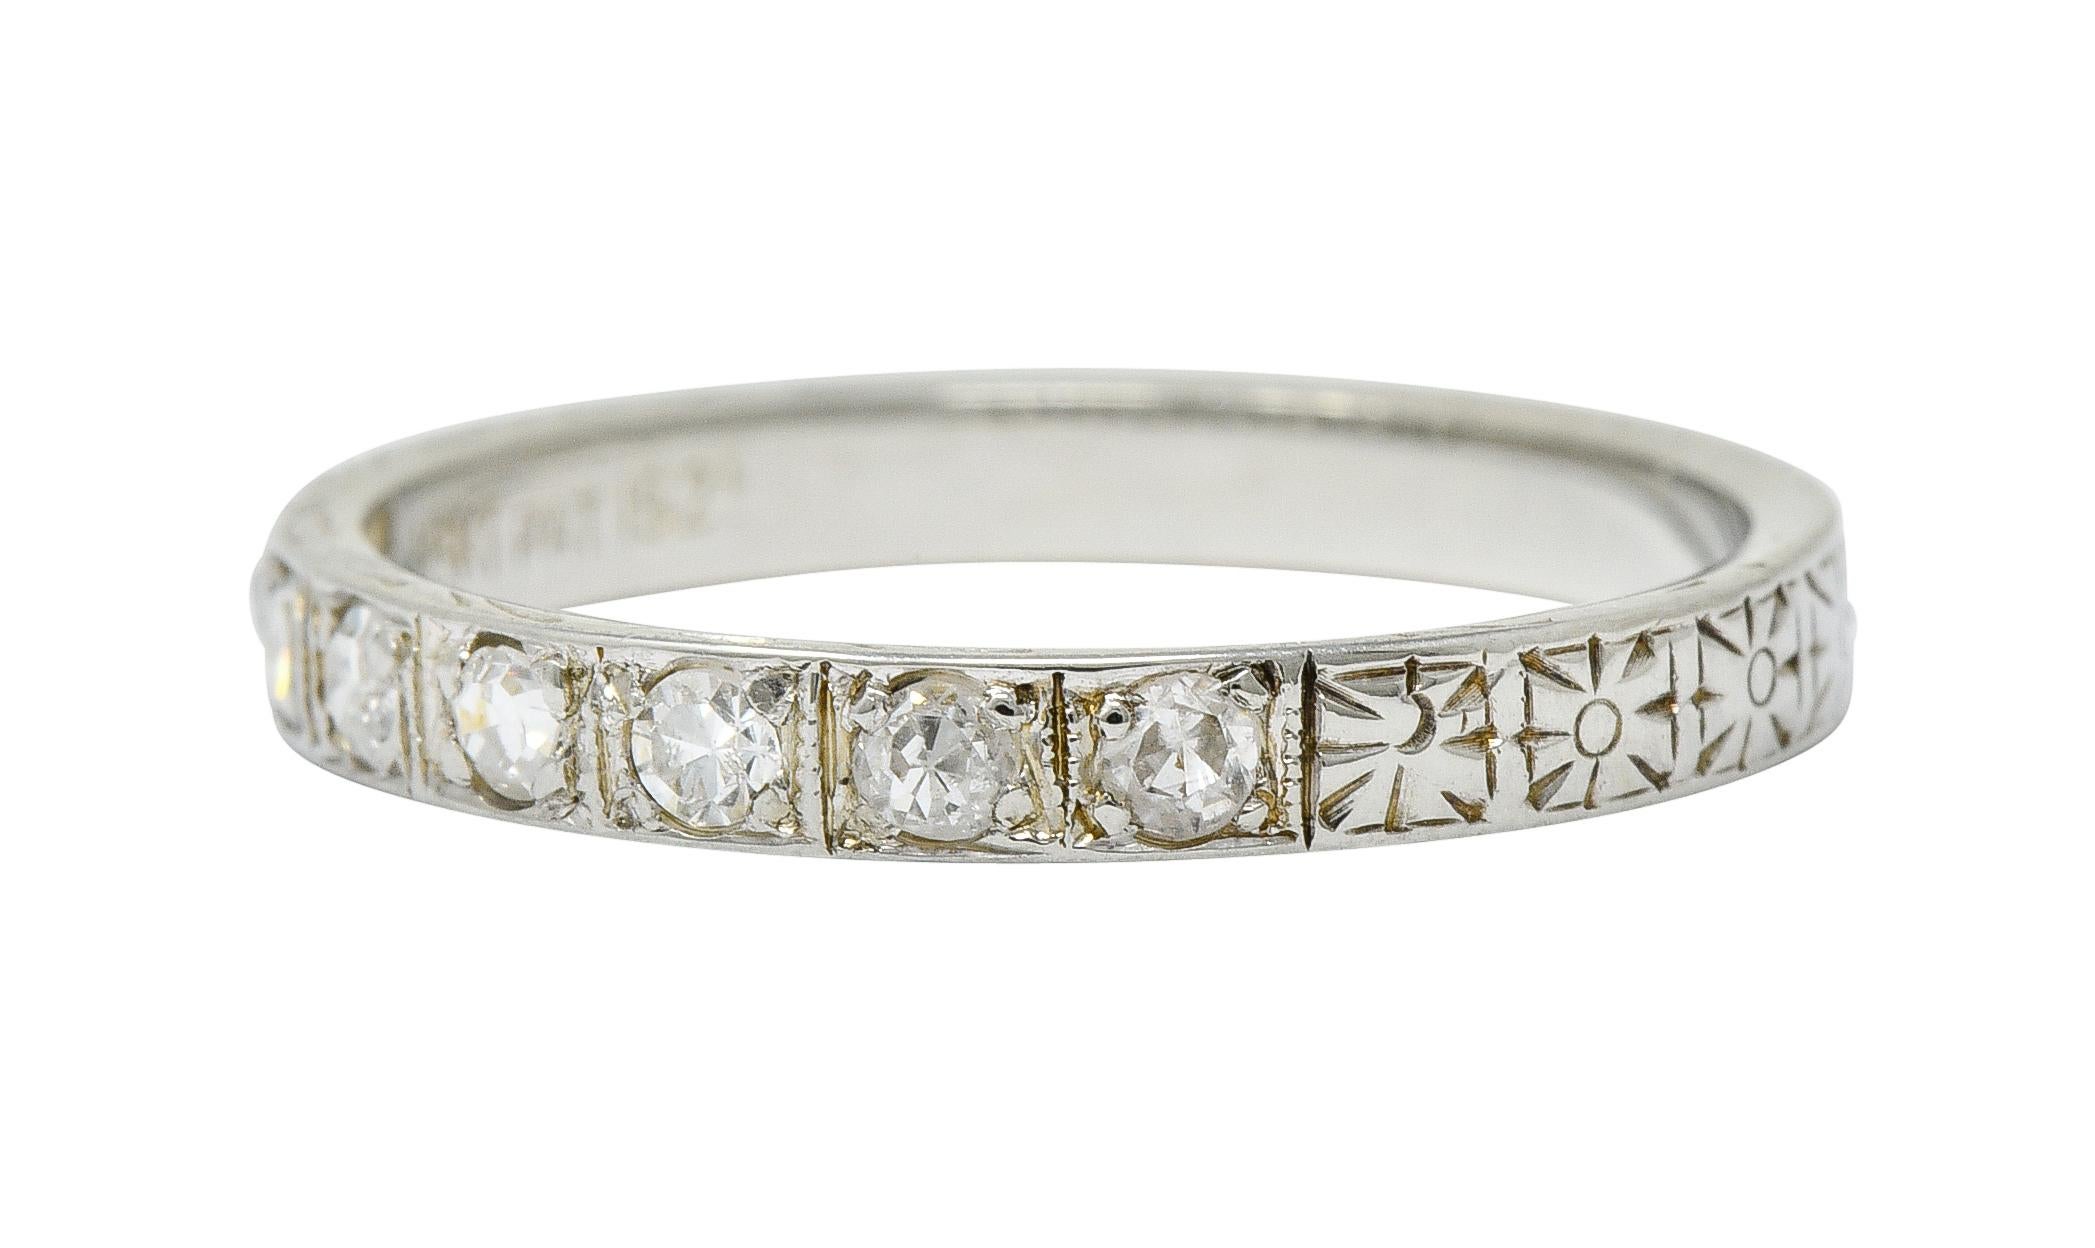 1925 Art Deco Diamond 18 Karat White Gold Orange Blossom Band Ring 1